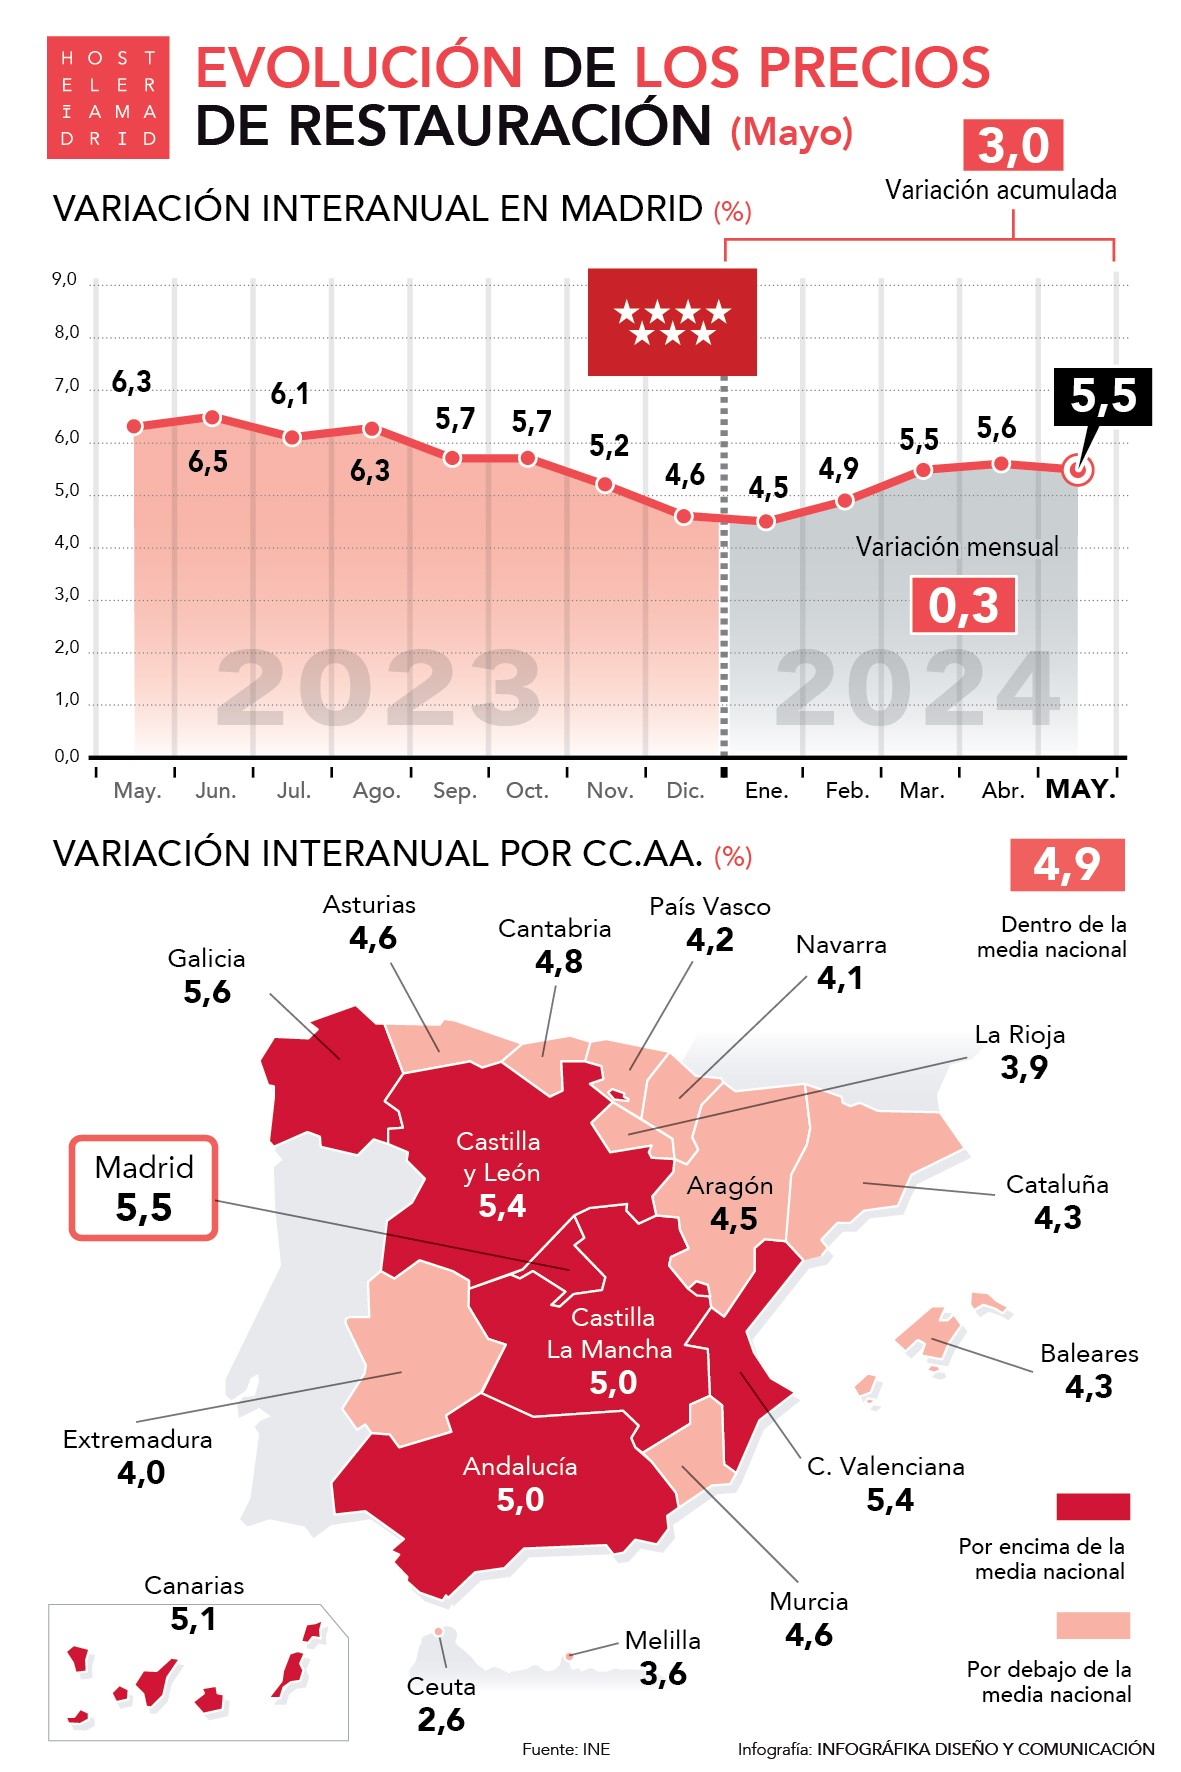 Los precios de restauración suben un 5,5% en Madrid en mayo, seis décimas por encima de la media nacional - La Viña